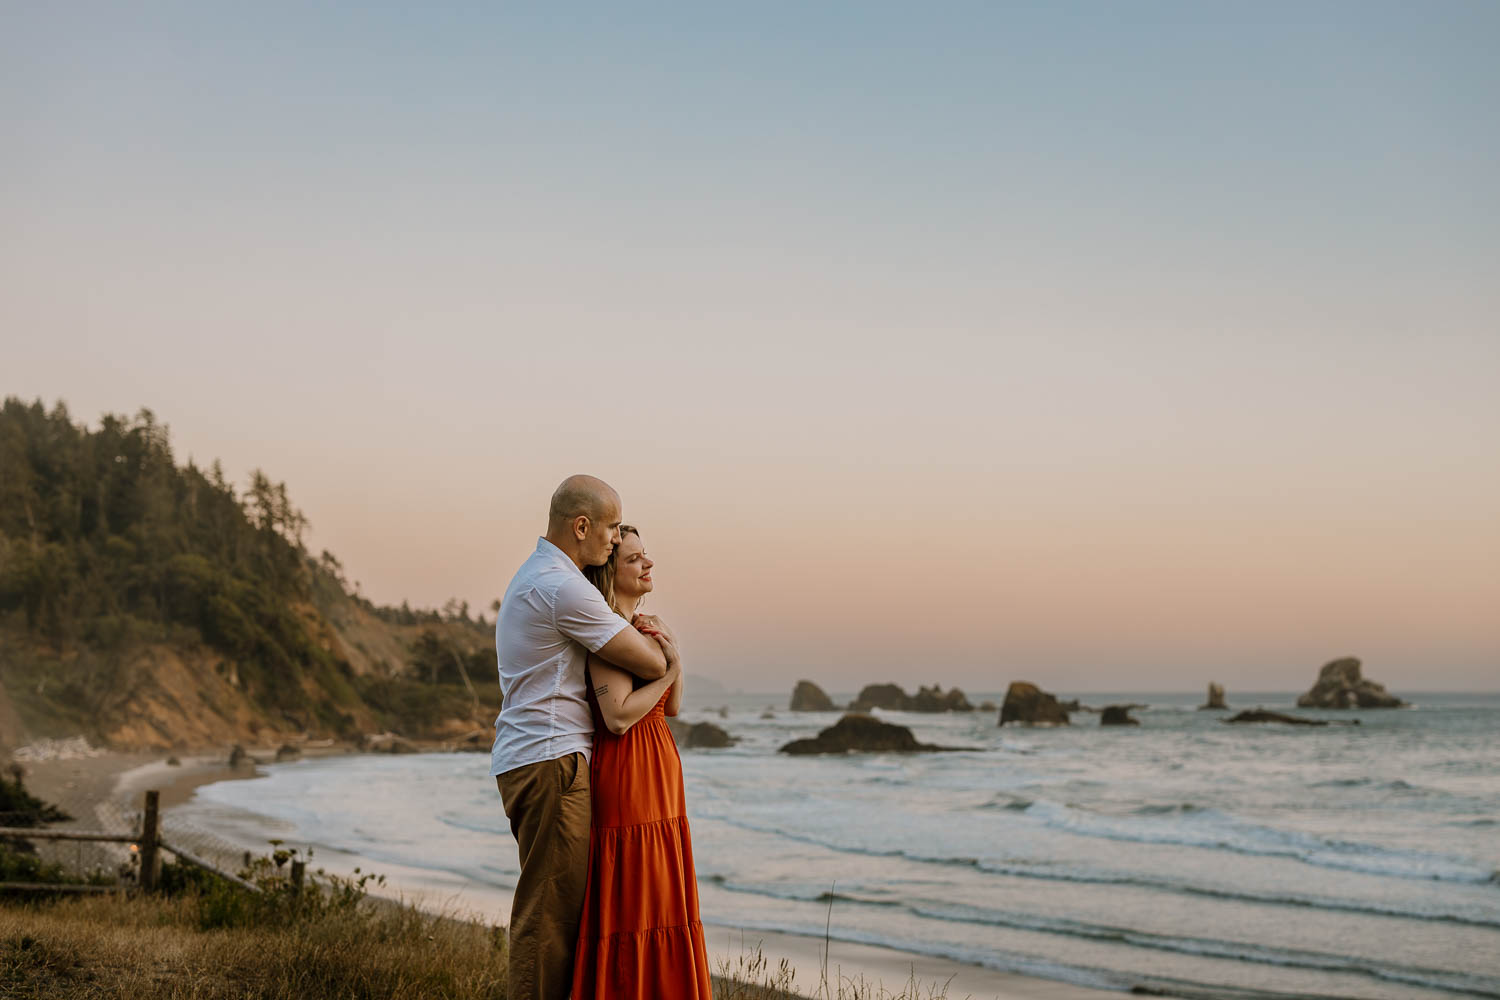 Indian beach, oregon viewpoint couples photos